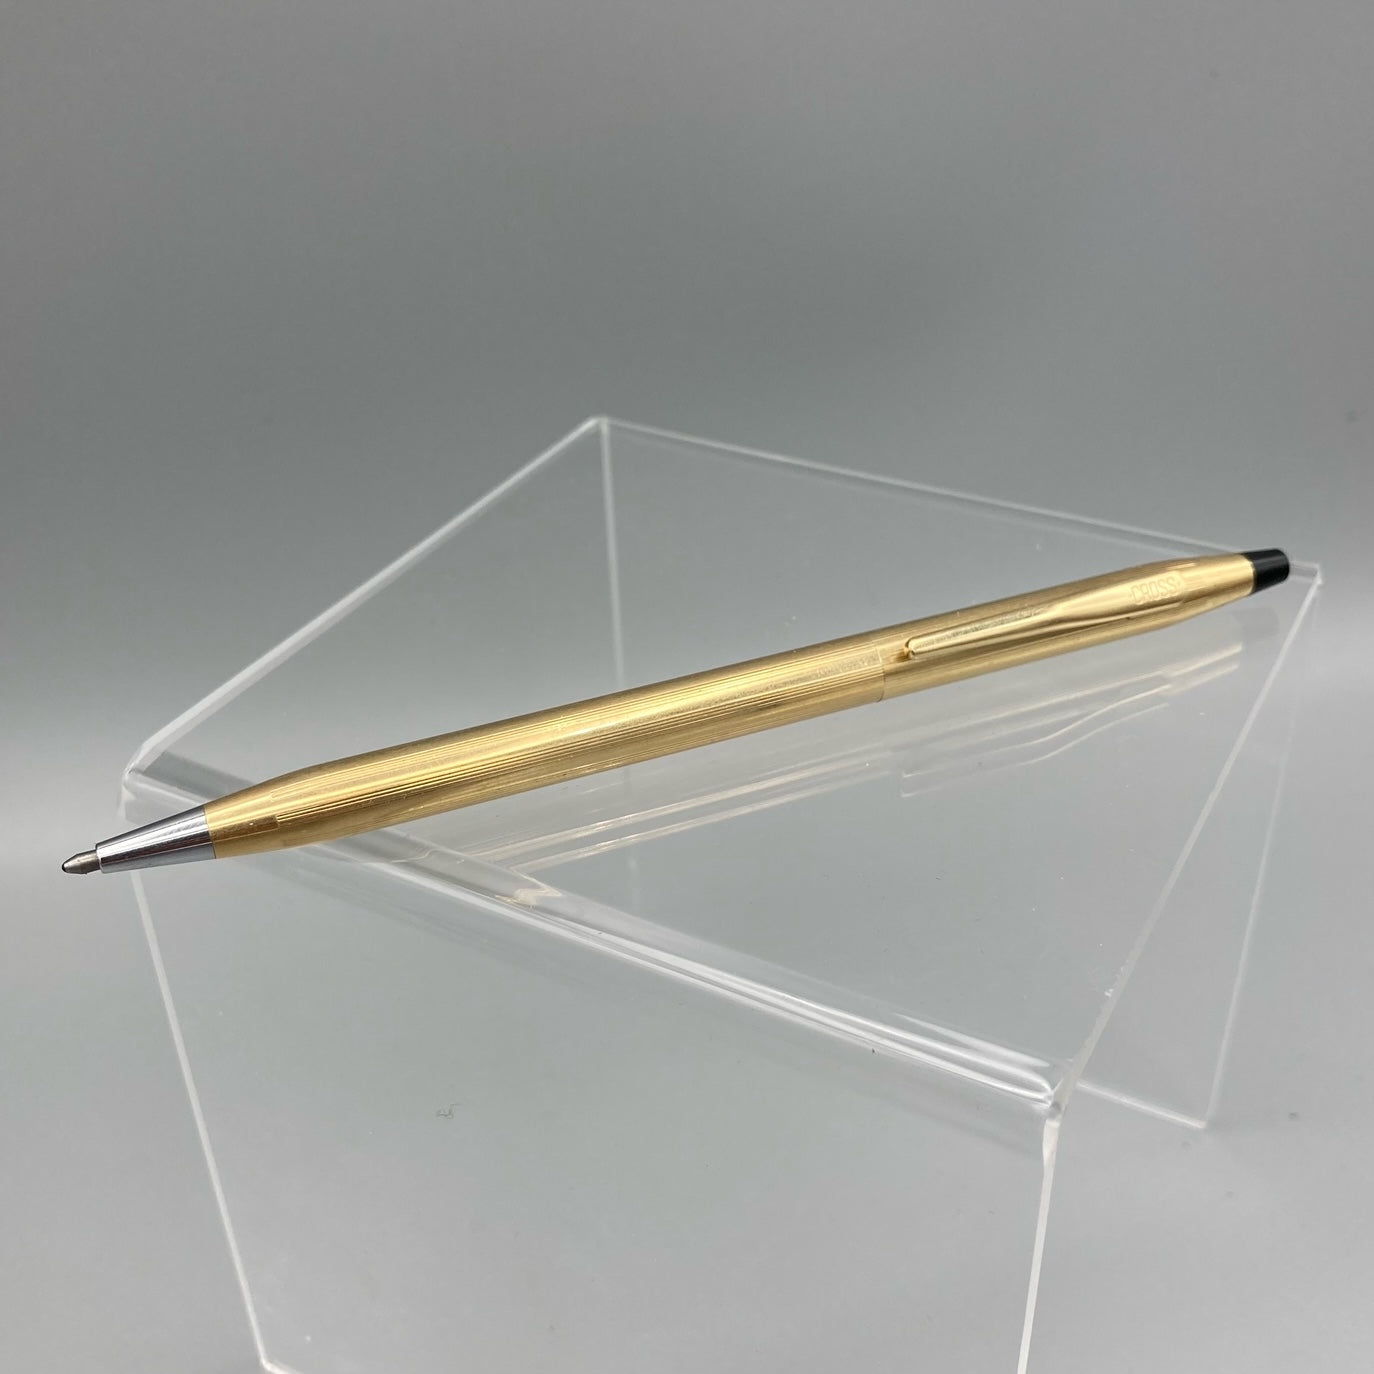 Cross 12kt Gold Filled Vintage Mechanical Pen 1/20